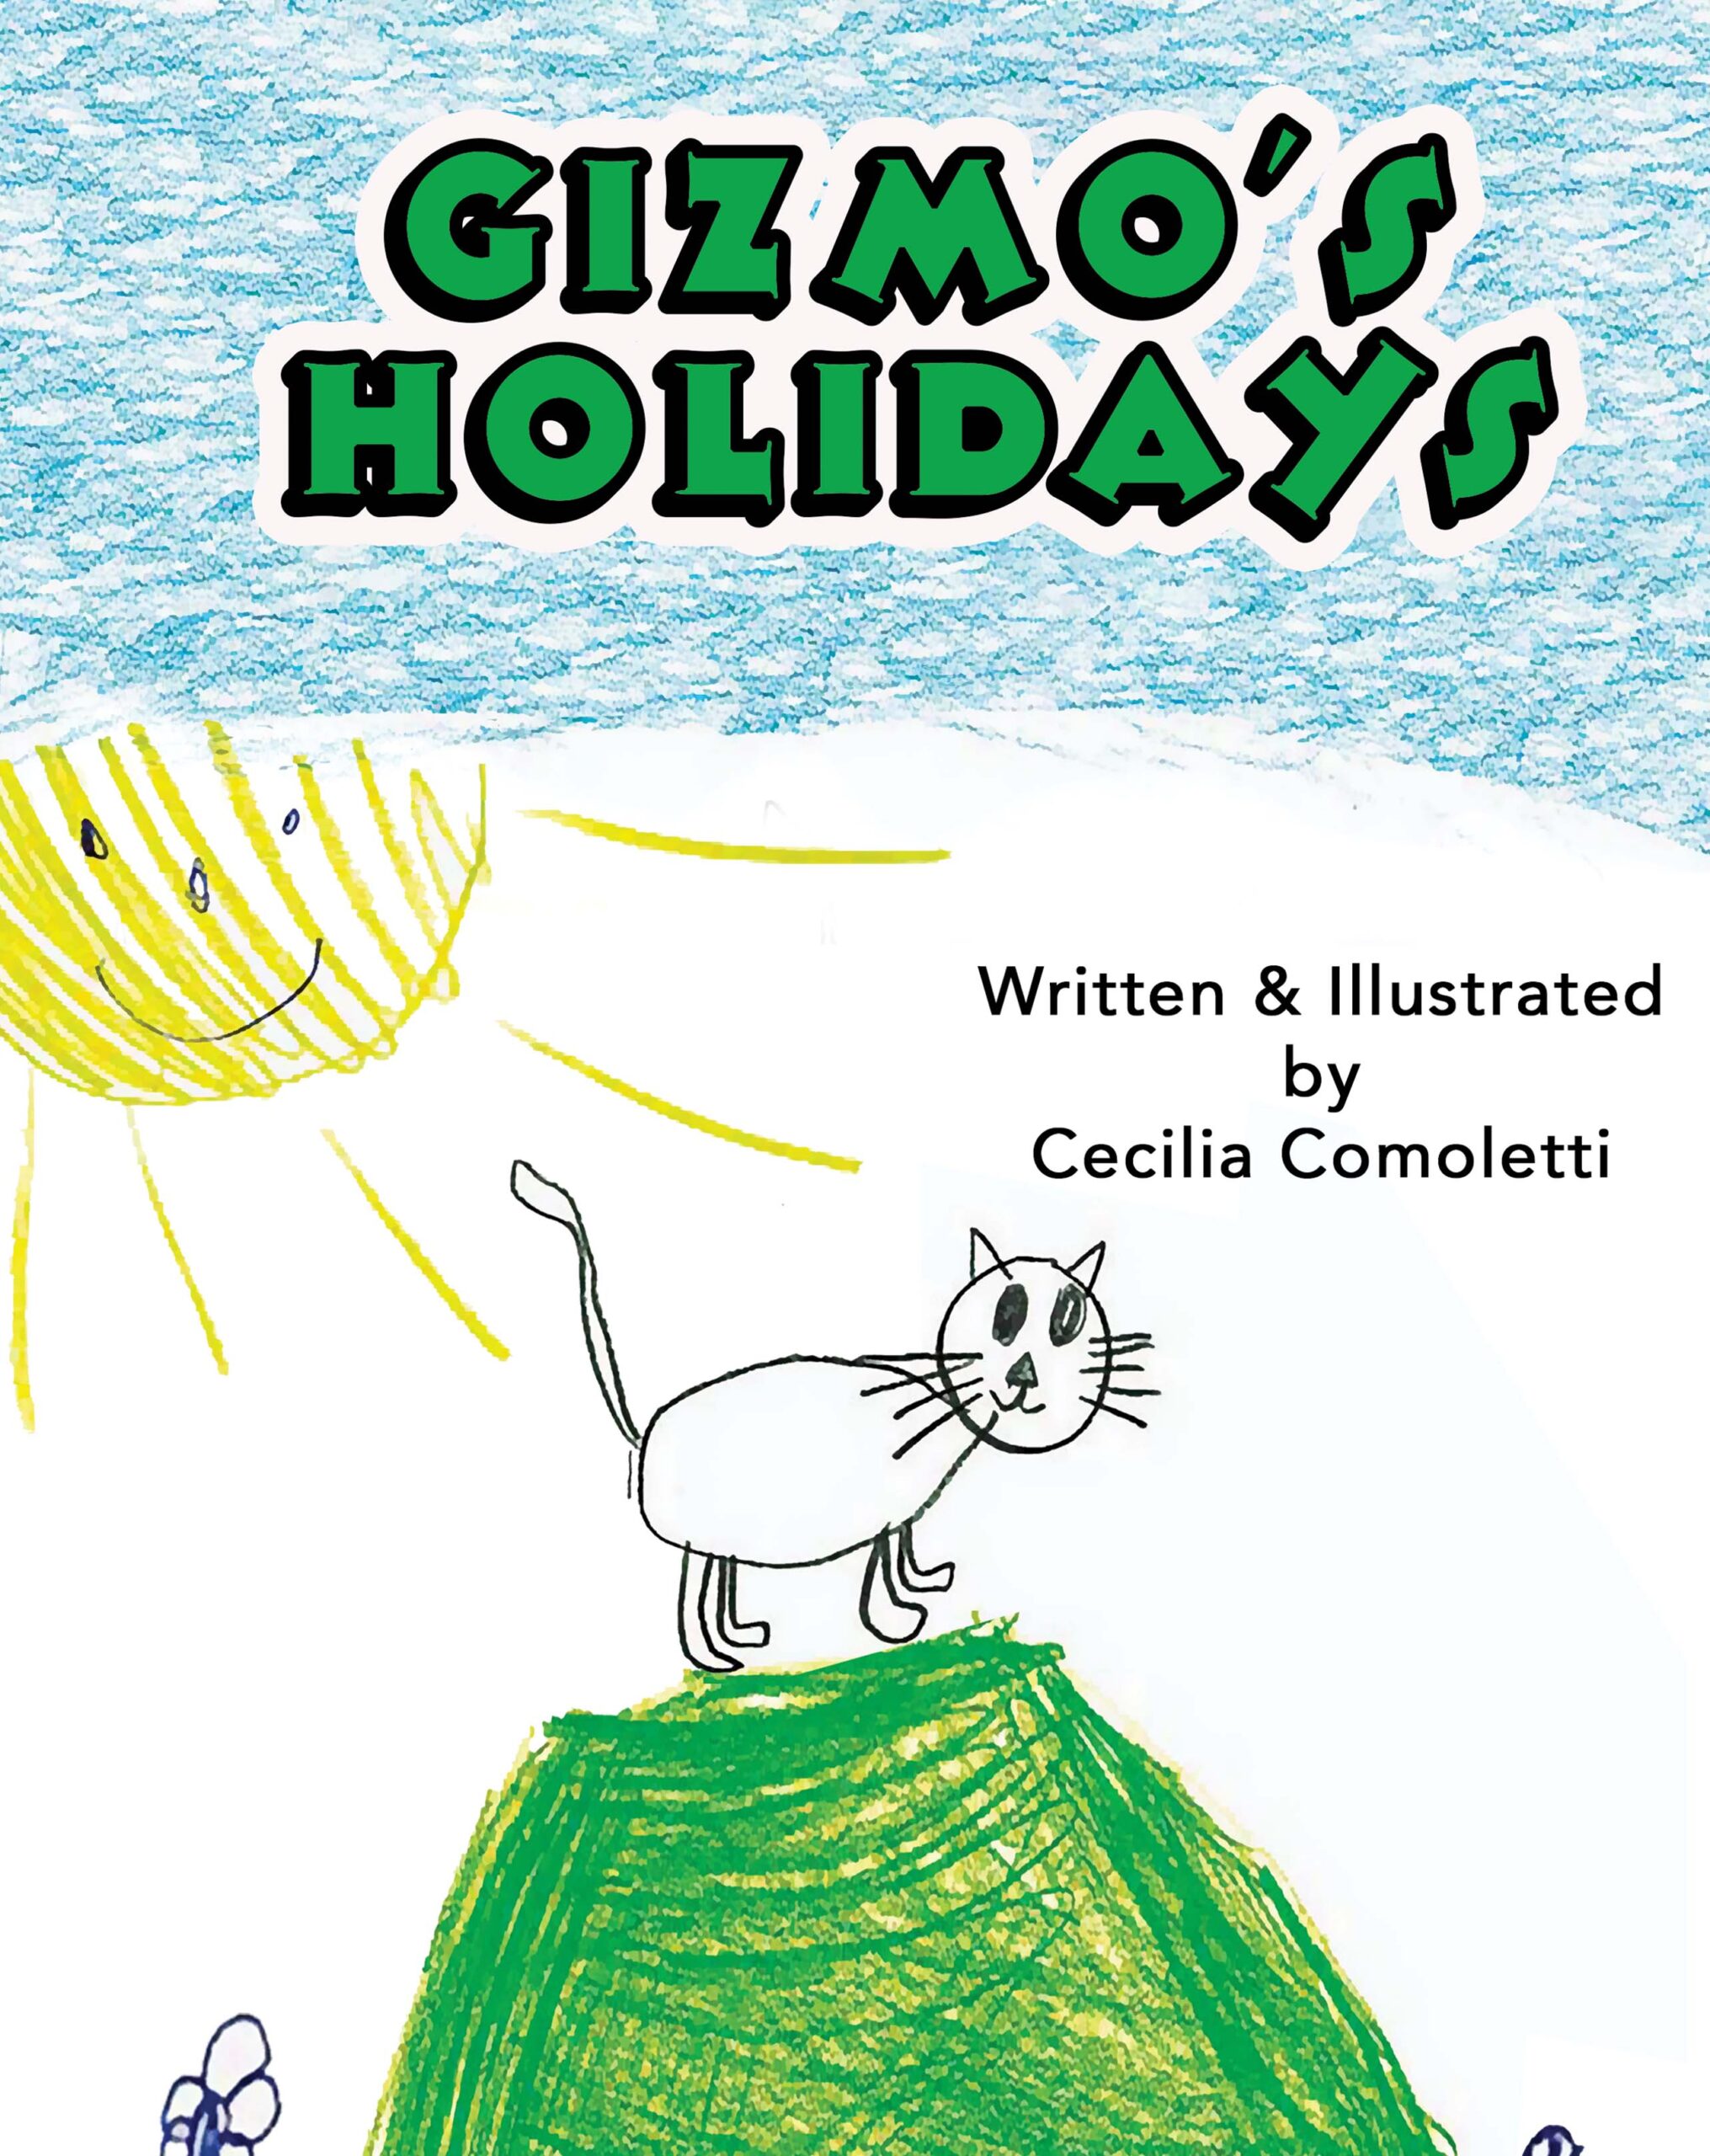 Gizmo children's book cover